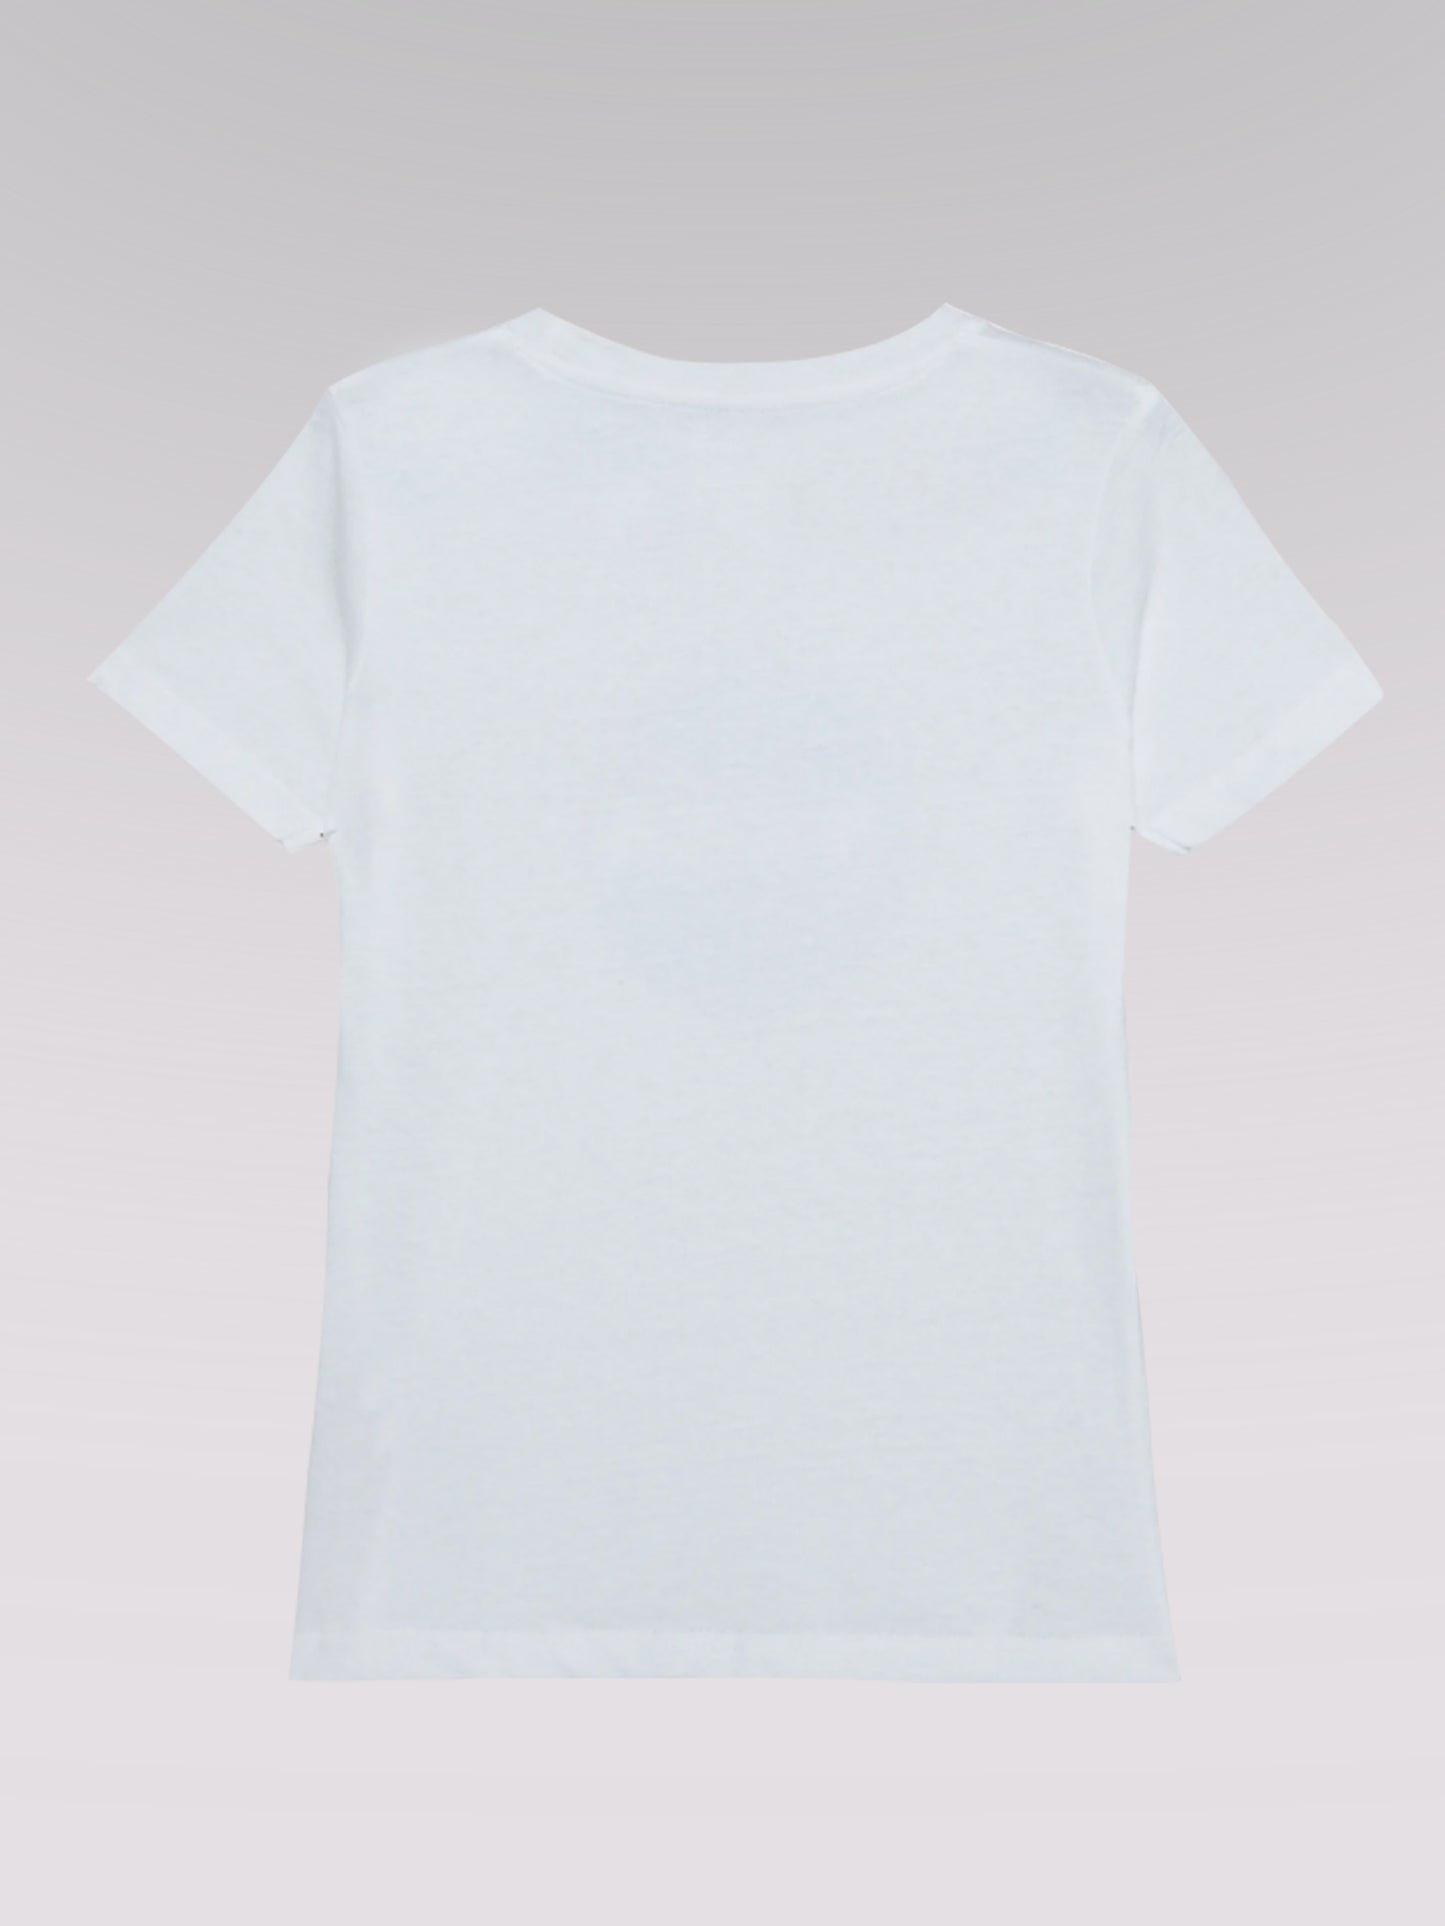 Kinder T-Shirt ZUKUNFT 01 (weiß)